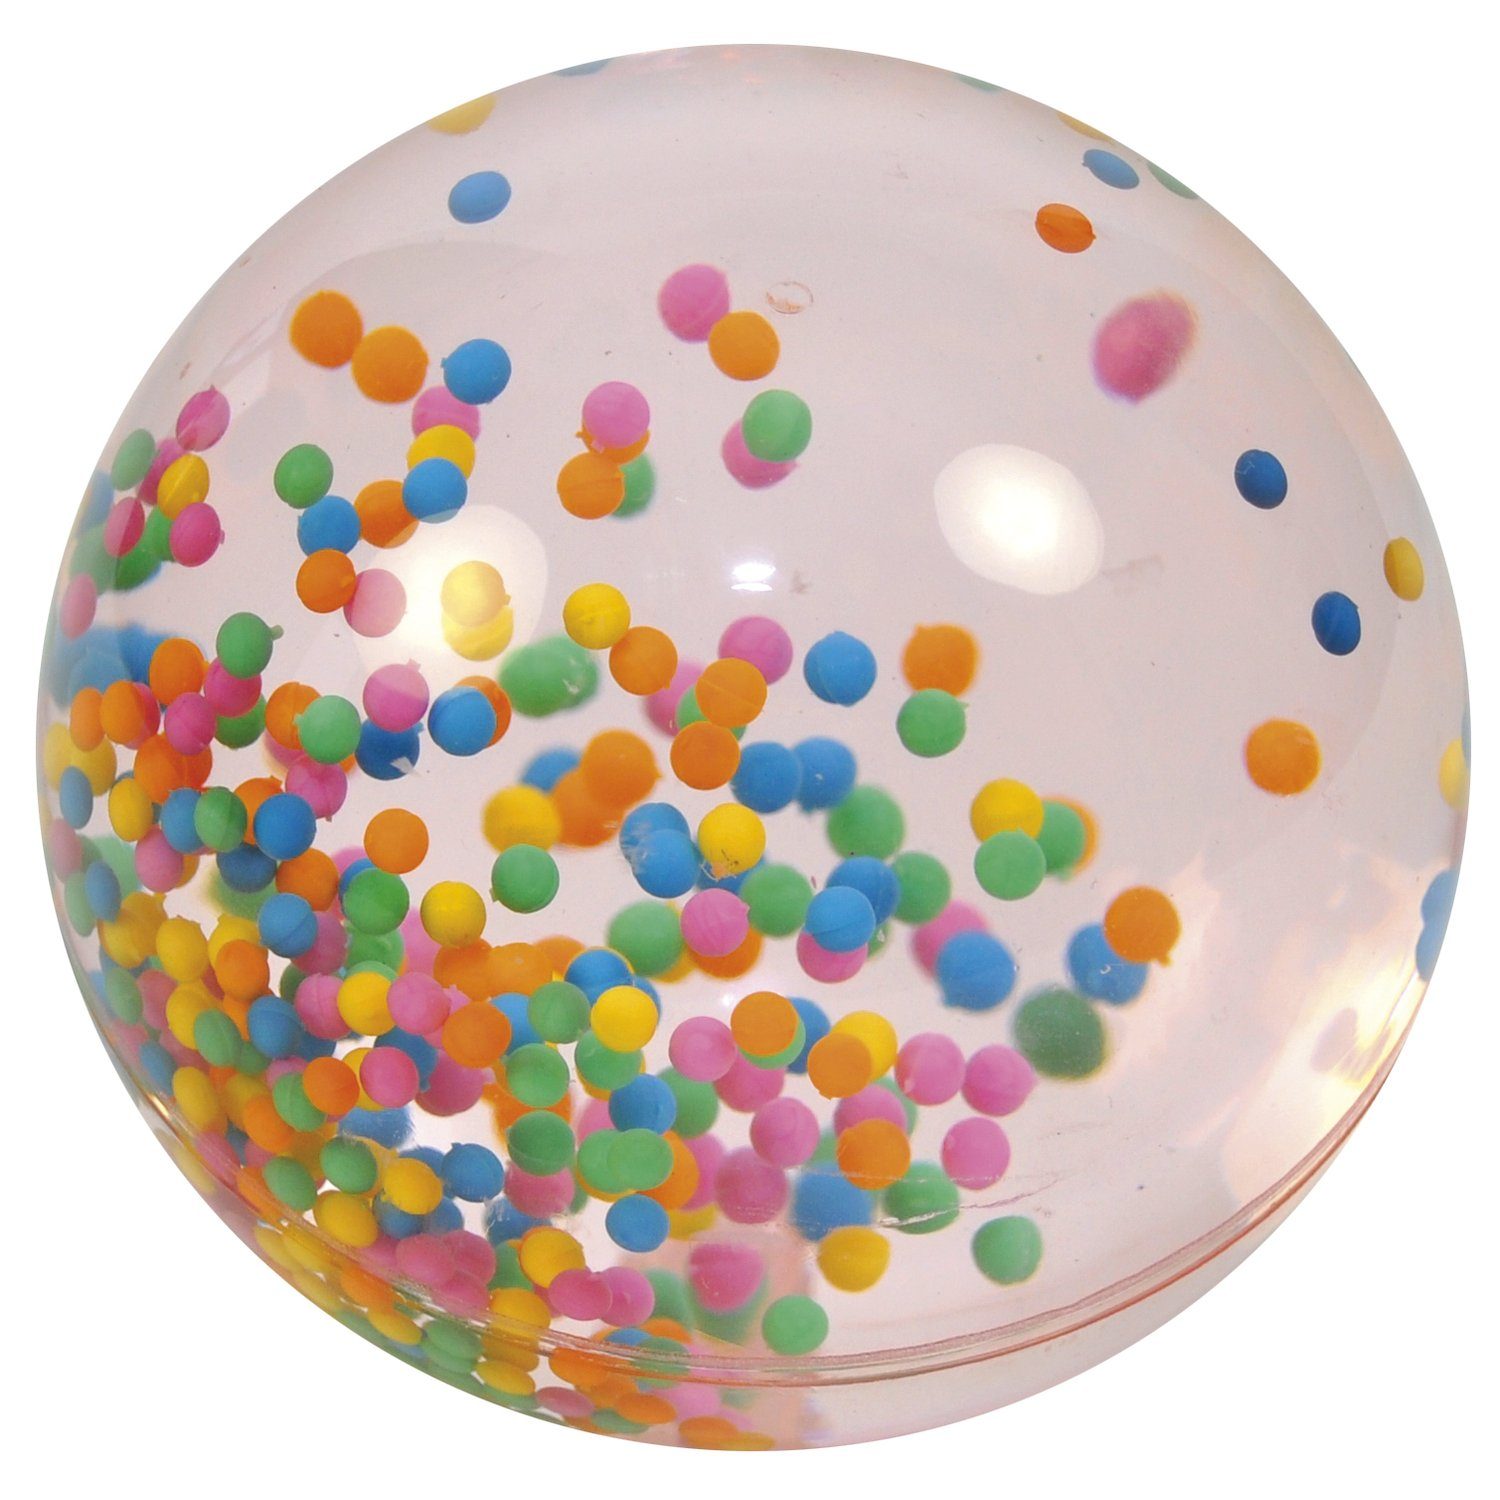 EDUPLAY Lernspielzeug Riesenflummi mit Wasser und Kügelchen gefüllt, Ø 10 cm